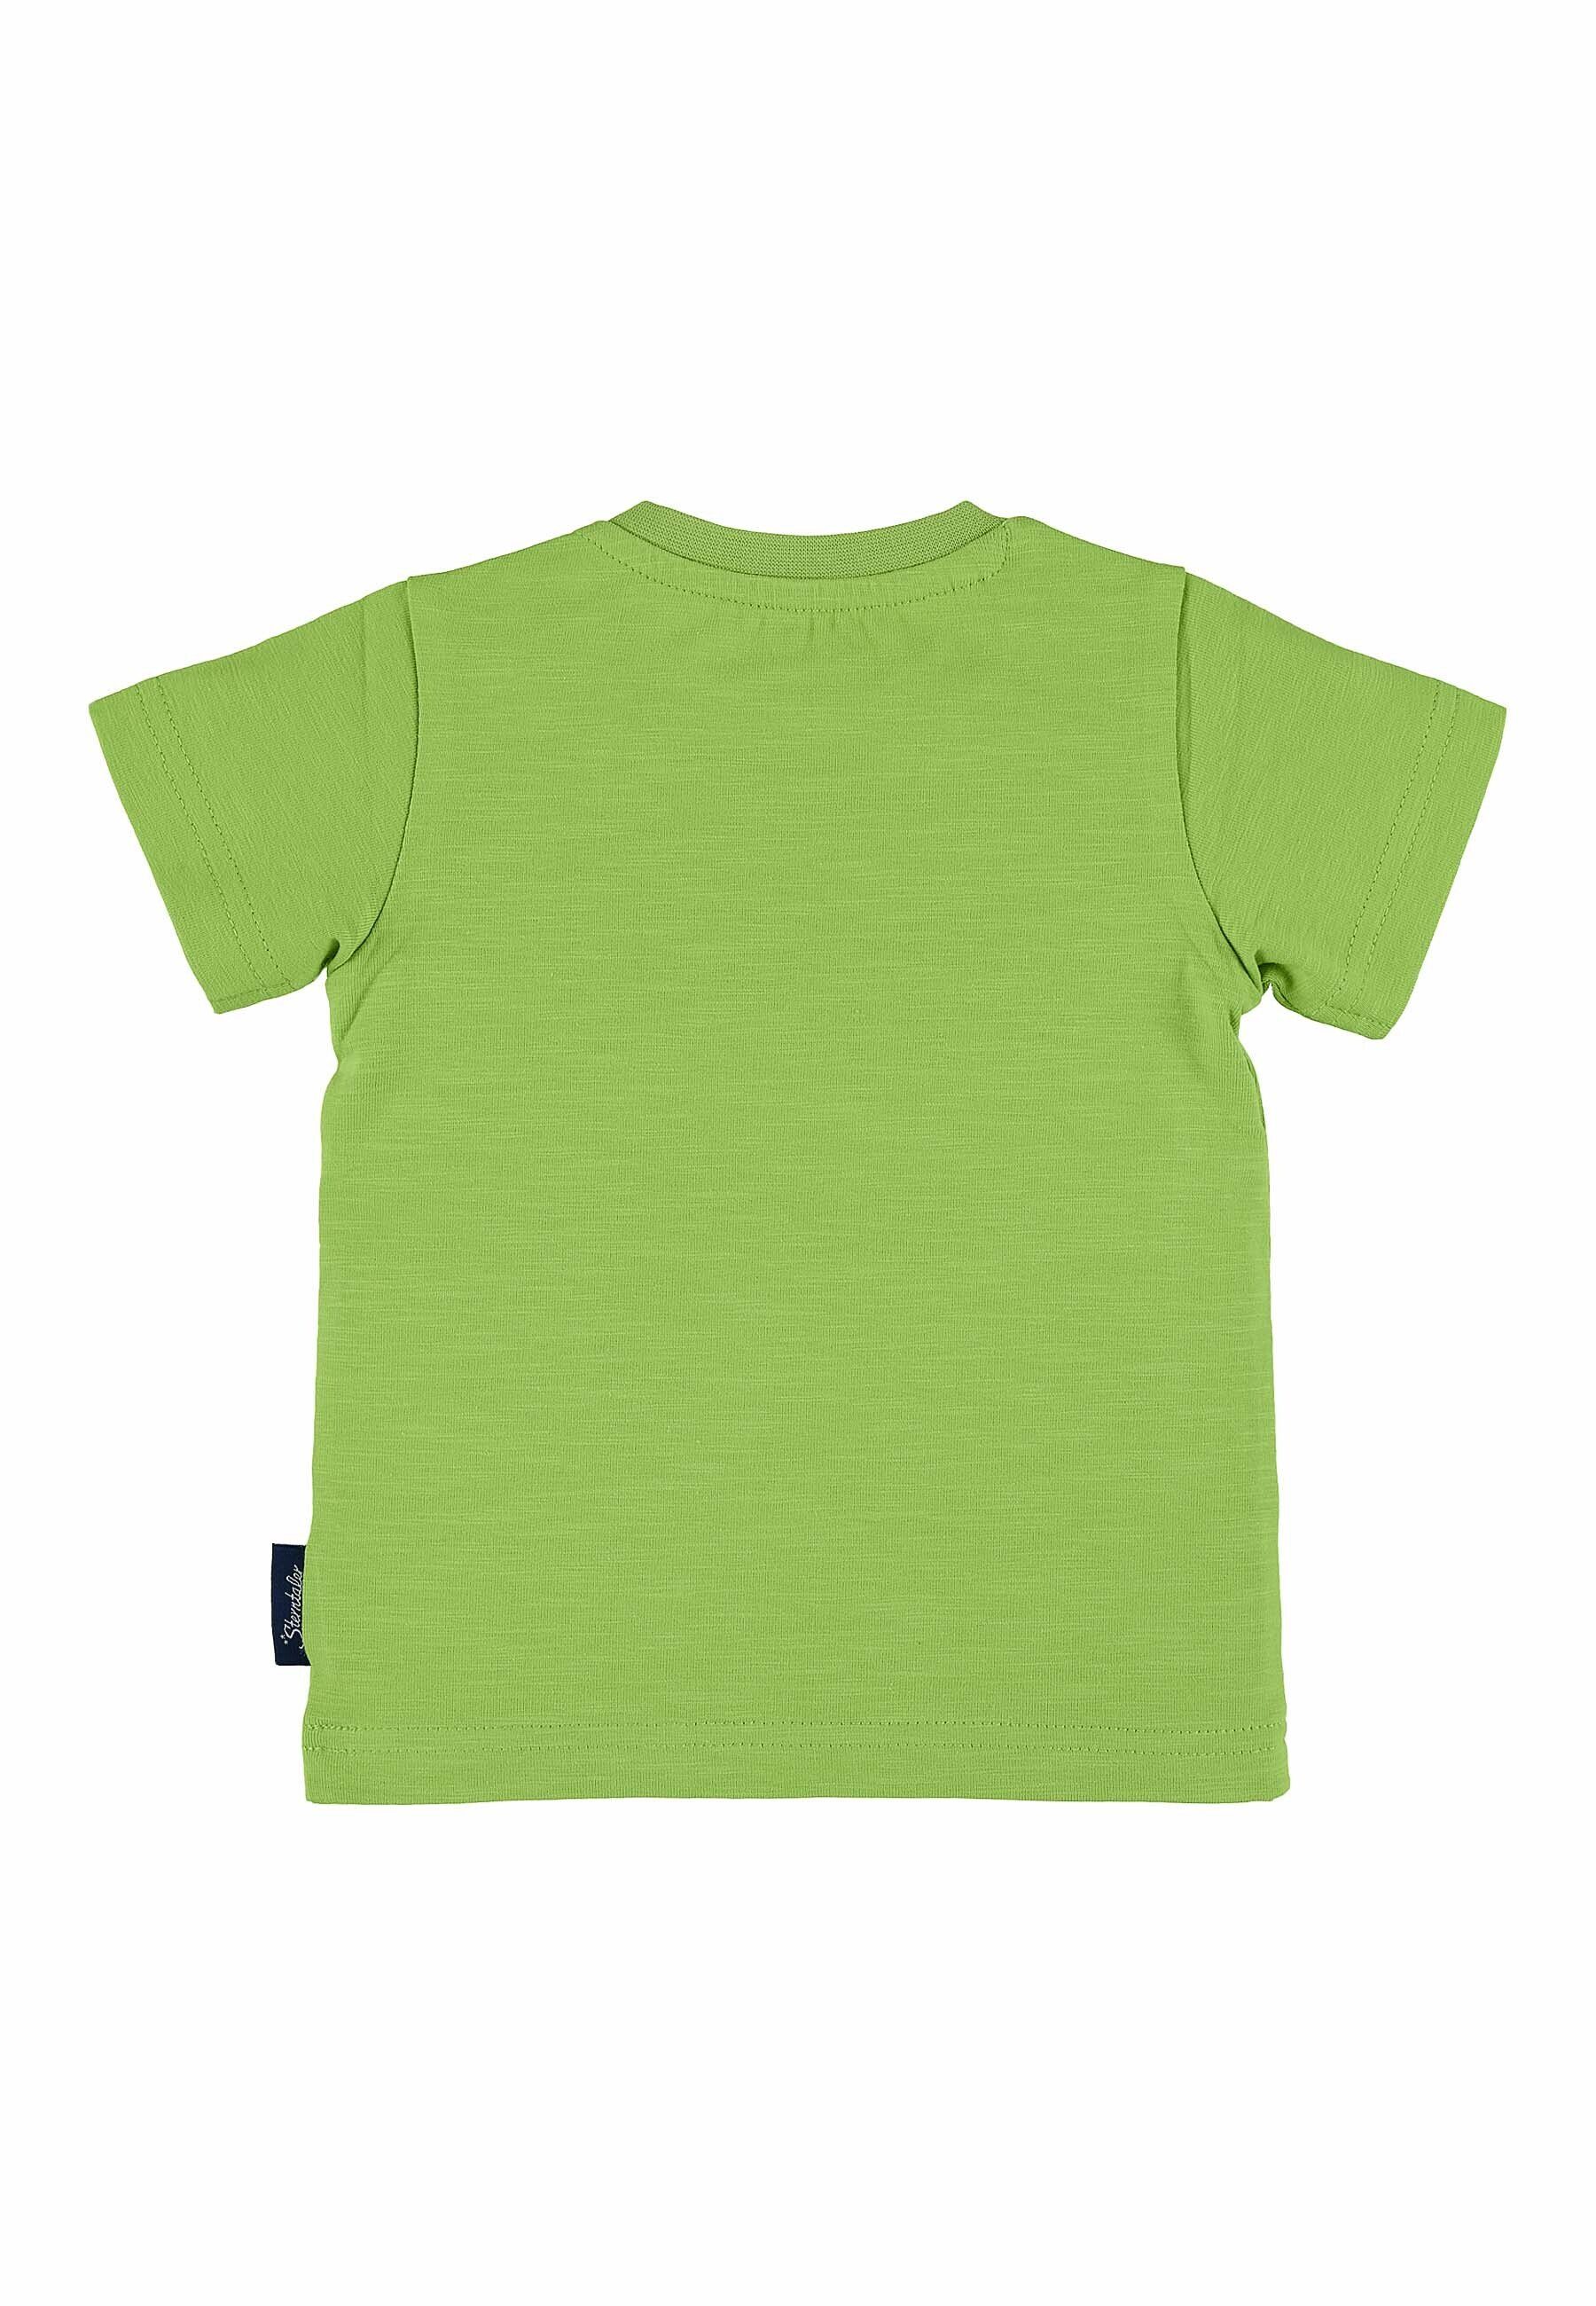 Kinder Jungen (Gr. 50 - 92) Sterntaler® Kurzarmshirt Kurzarm-Shirt (1-tlg) Baby Shirt - Kurzarmshirt Kinder - Kurzarm-Shirt mit 